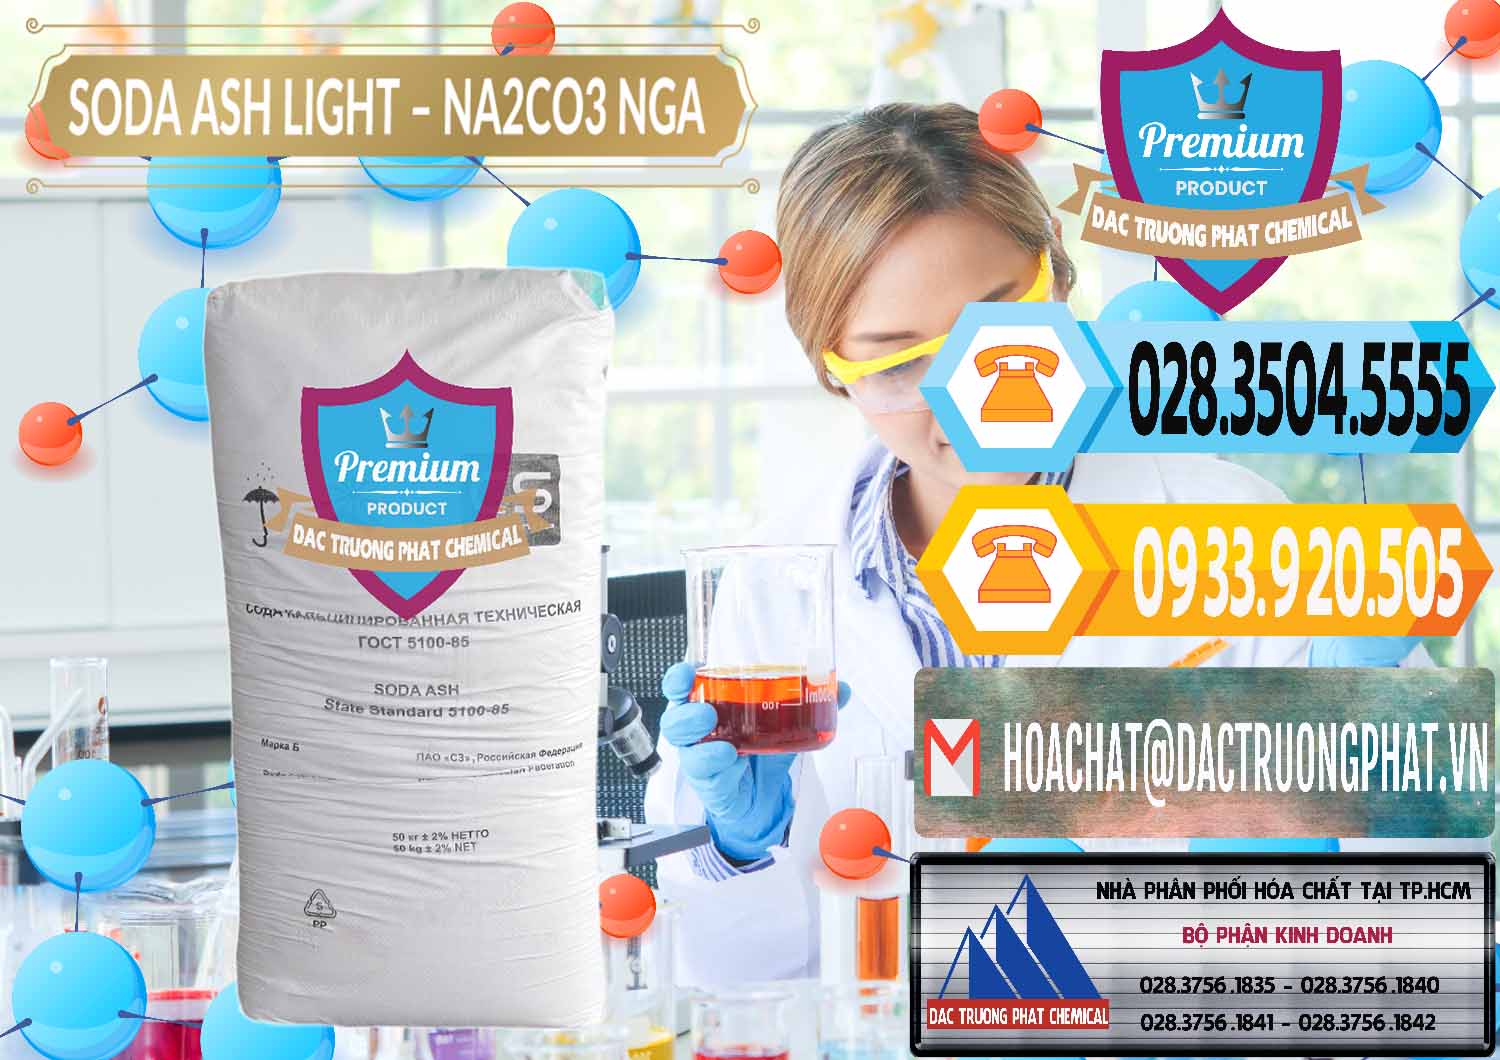 Công ty chuyên cung ứng - bán Soda Ash Light - NA2CO3 Nga Russia - 0128 - Cty cung cấp & phân phối hóa chất tại TP.HCM - hoachattayrua.net